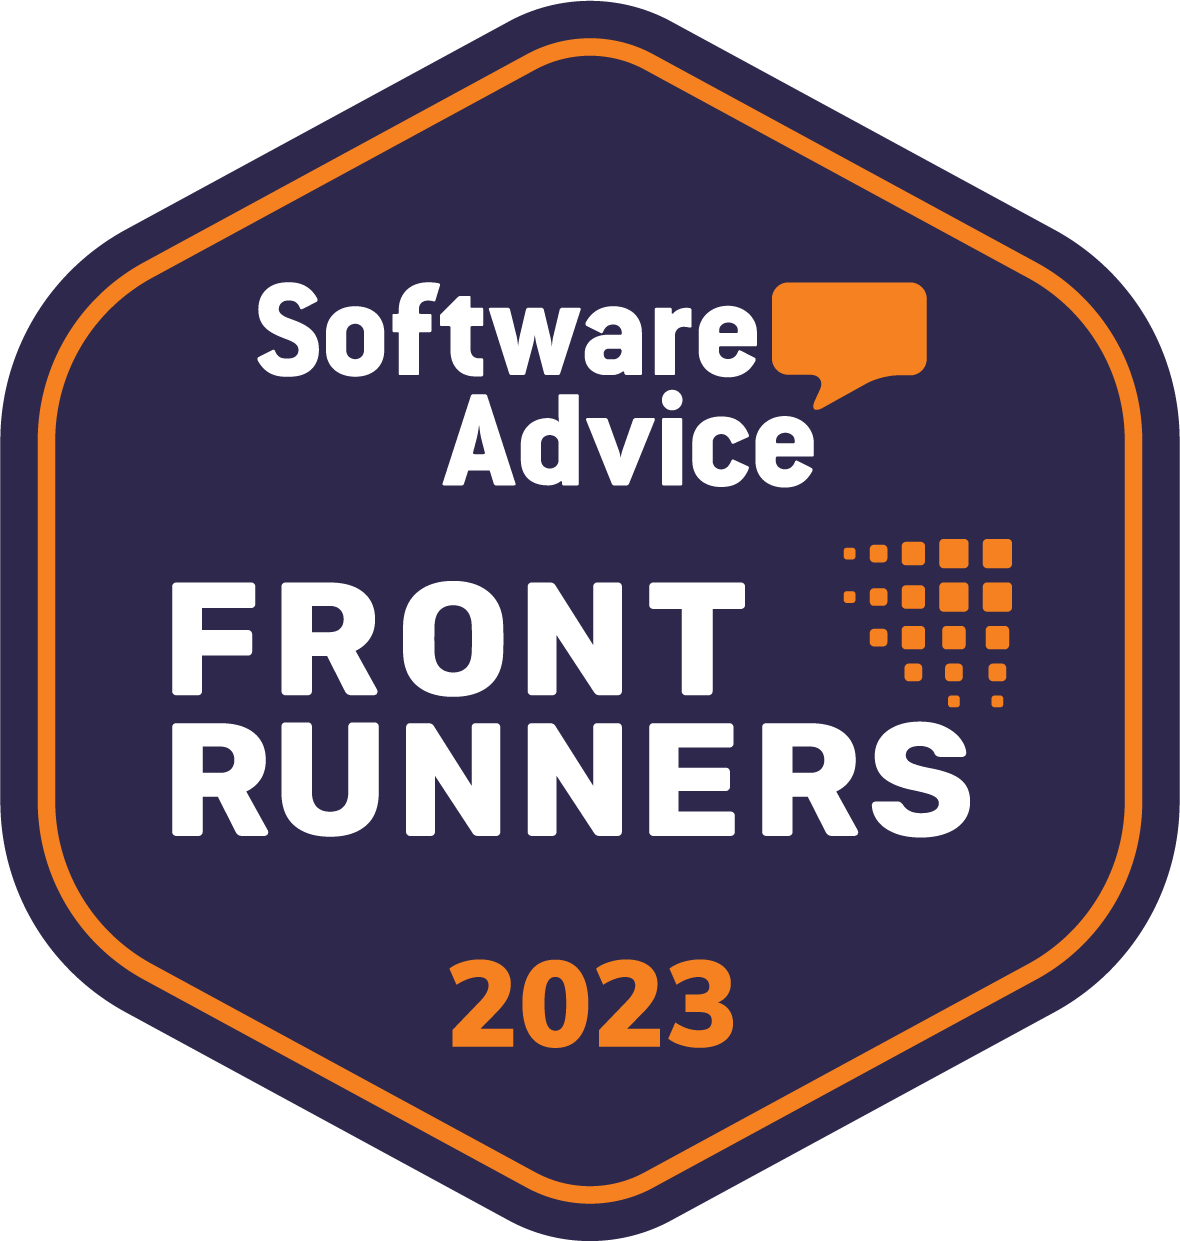 2023 Immagine dei Consulenti Software Frontrunners